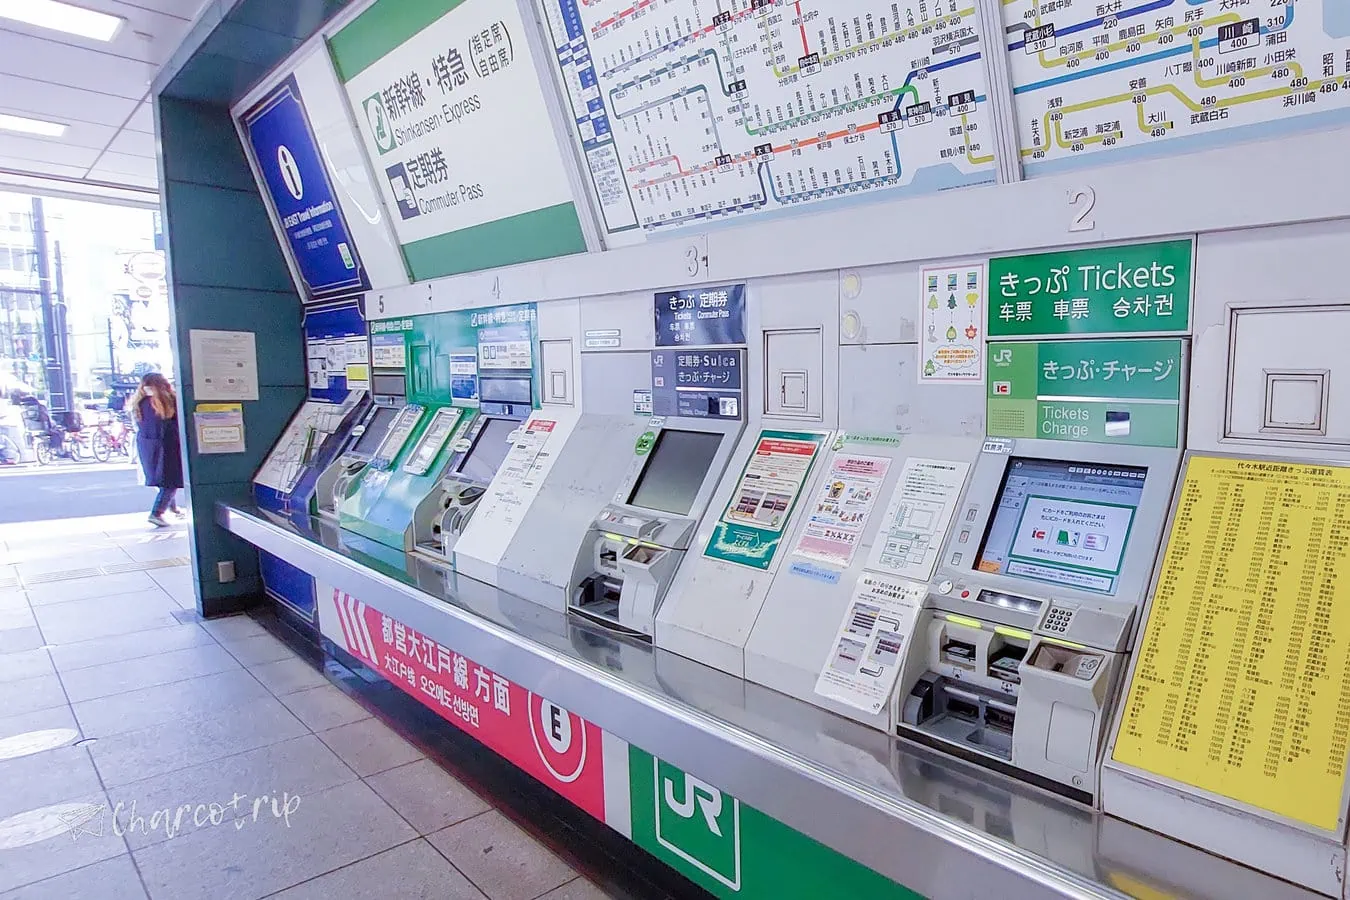 Maquina para reservar boletos de Shinkansen